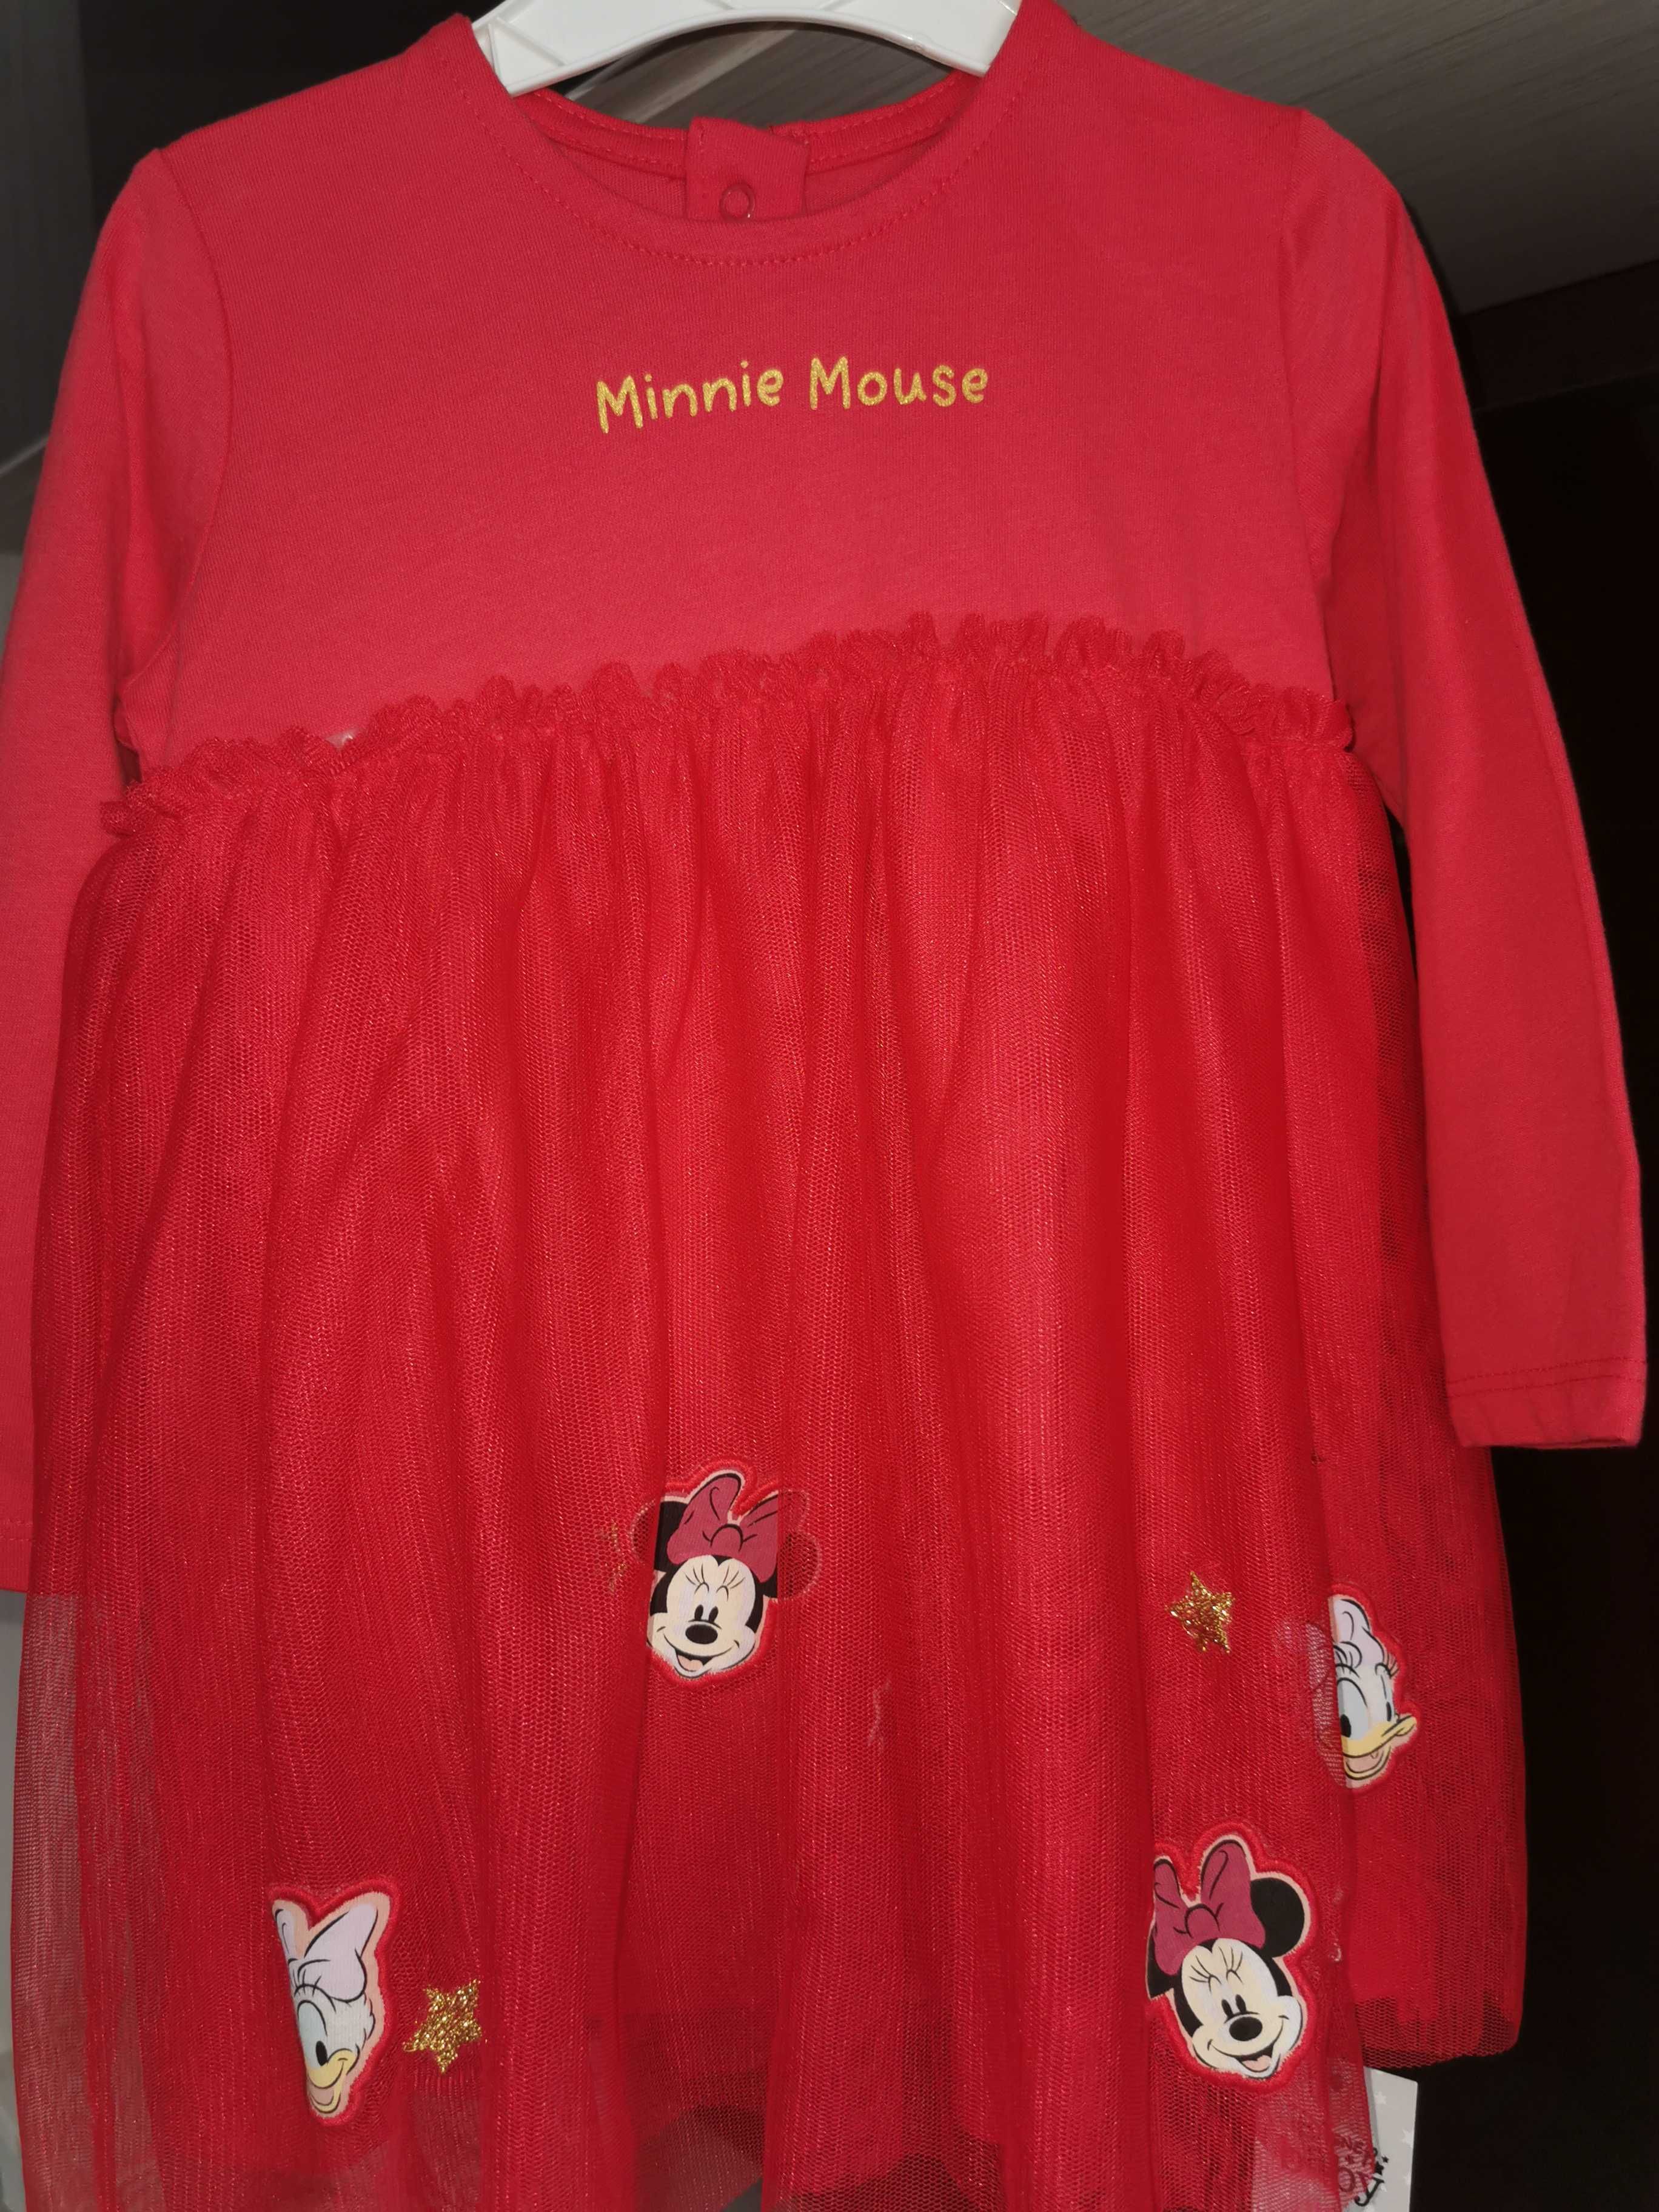 Rochie roșie cu Minnie, George,noua cu eticheta, pentru 12-18 luni